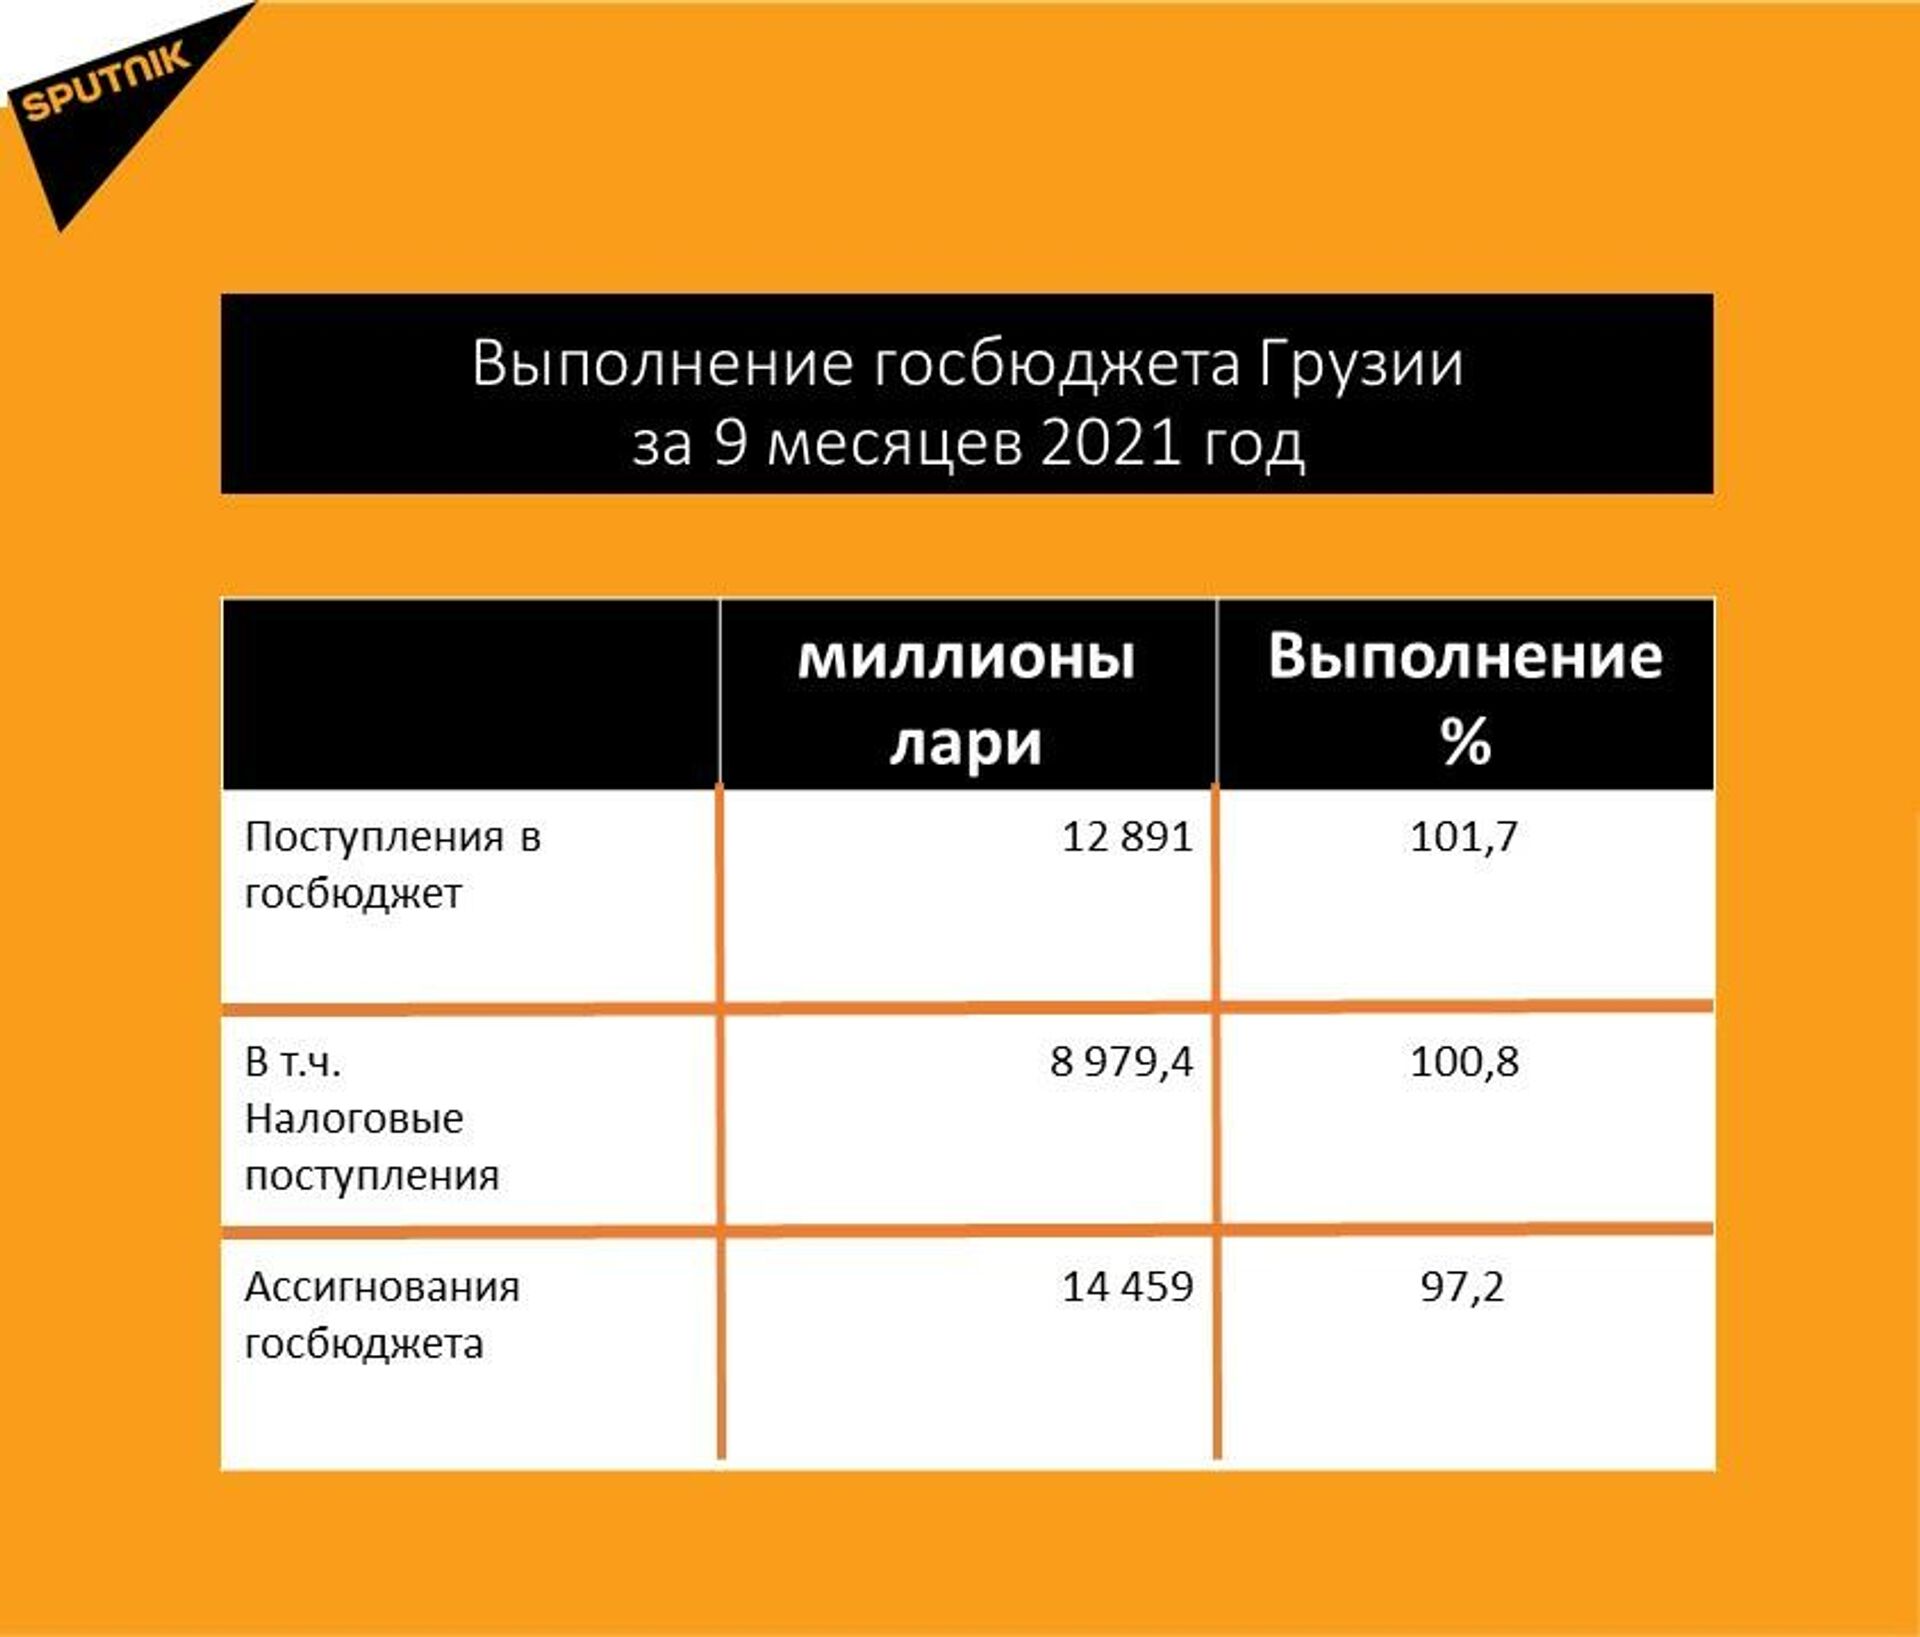 Статистика выполнения госбюджета за январь-сентябрь 2021 года - Sputnik Грузия, 1920, 10.11.2021